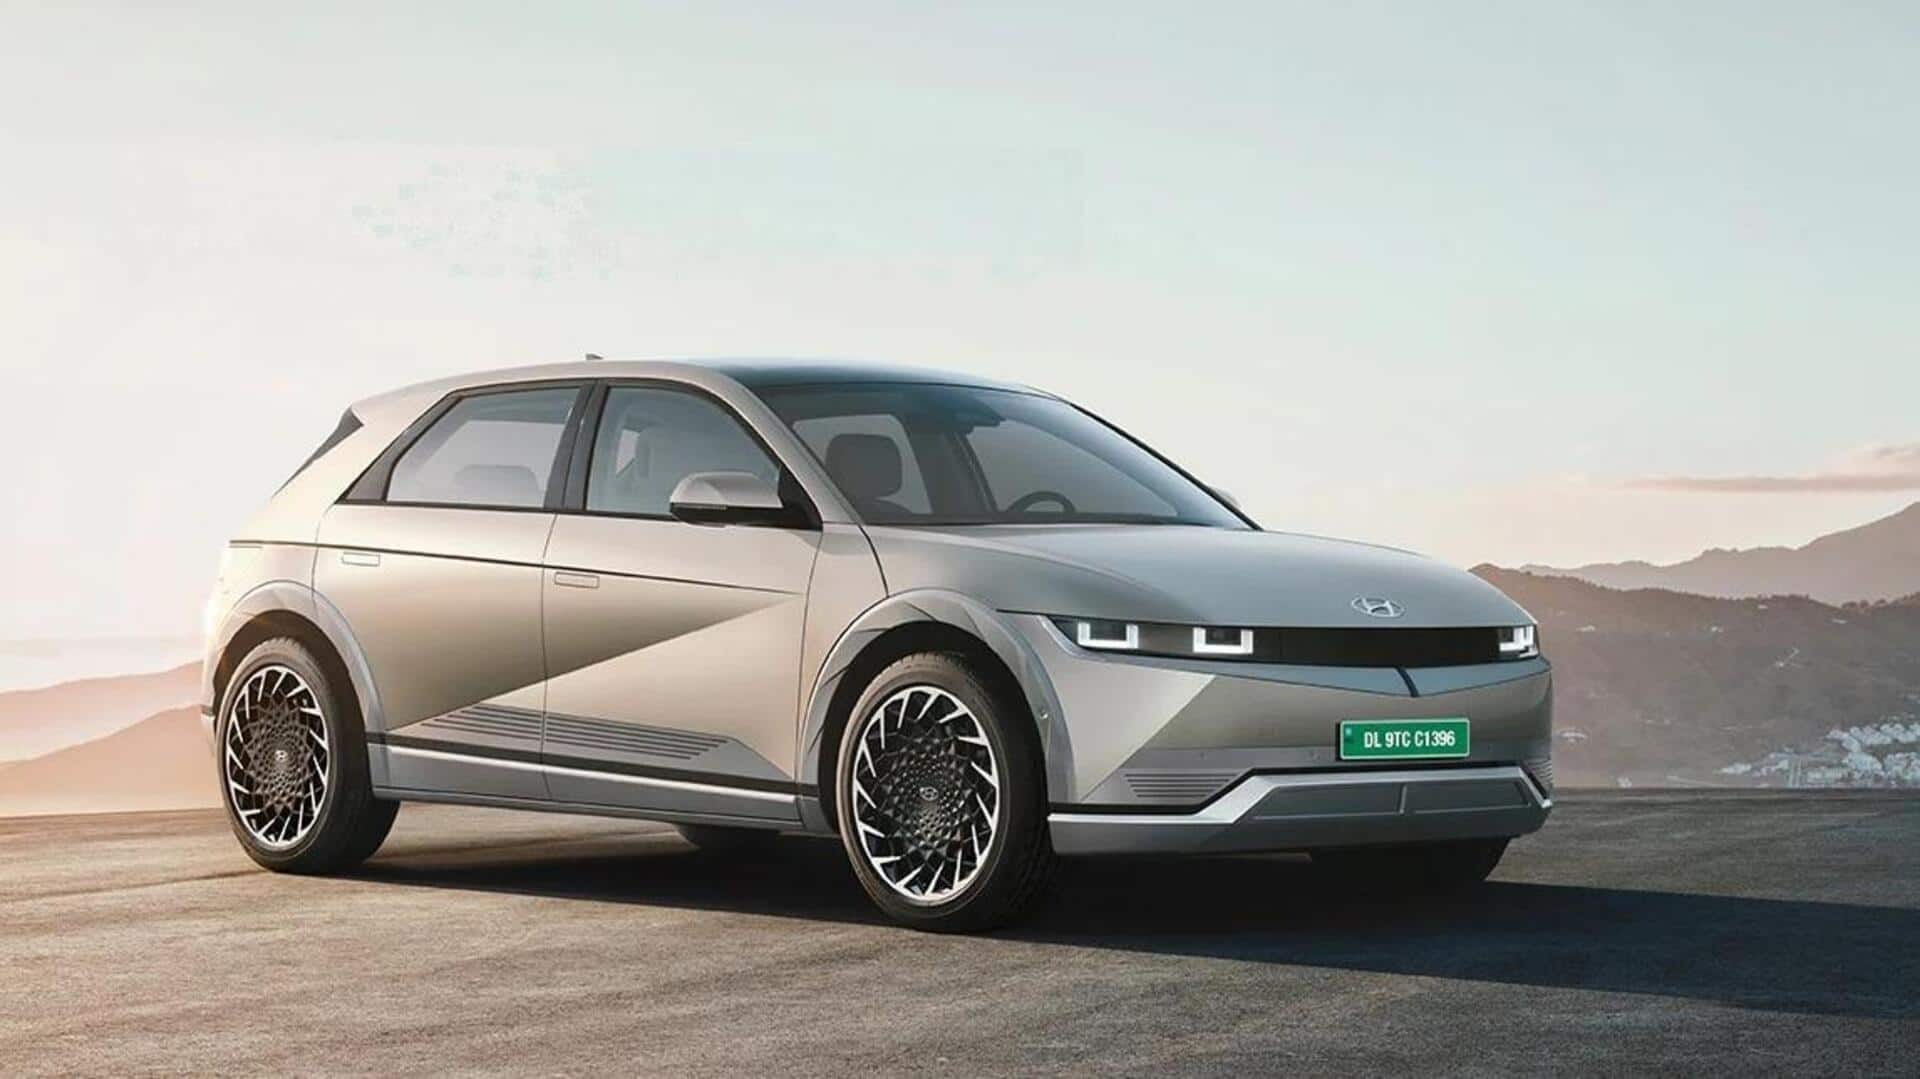 अलविदा 2023: इस साल लॉन्च हुईं MG कॉमेट सहित हुई हैं ये बेहतरीन इलेक्ट्रिक गाड़ियां